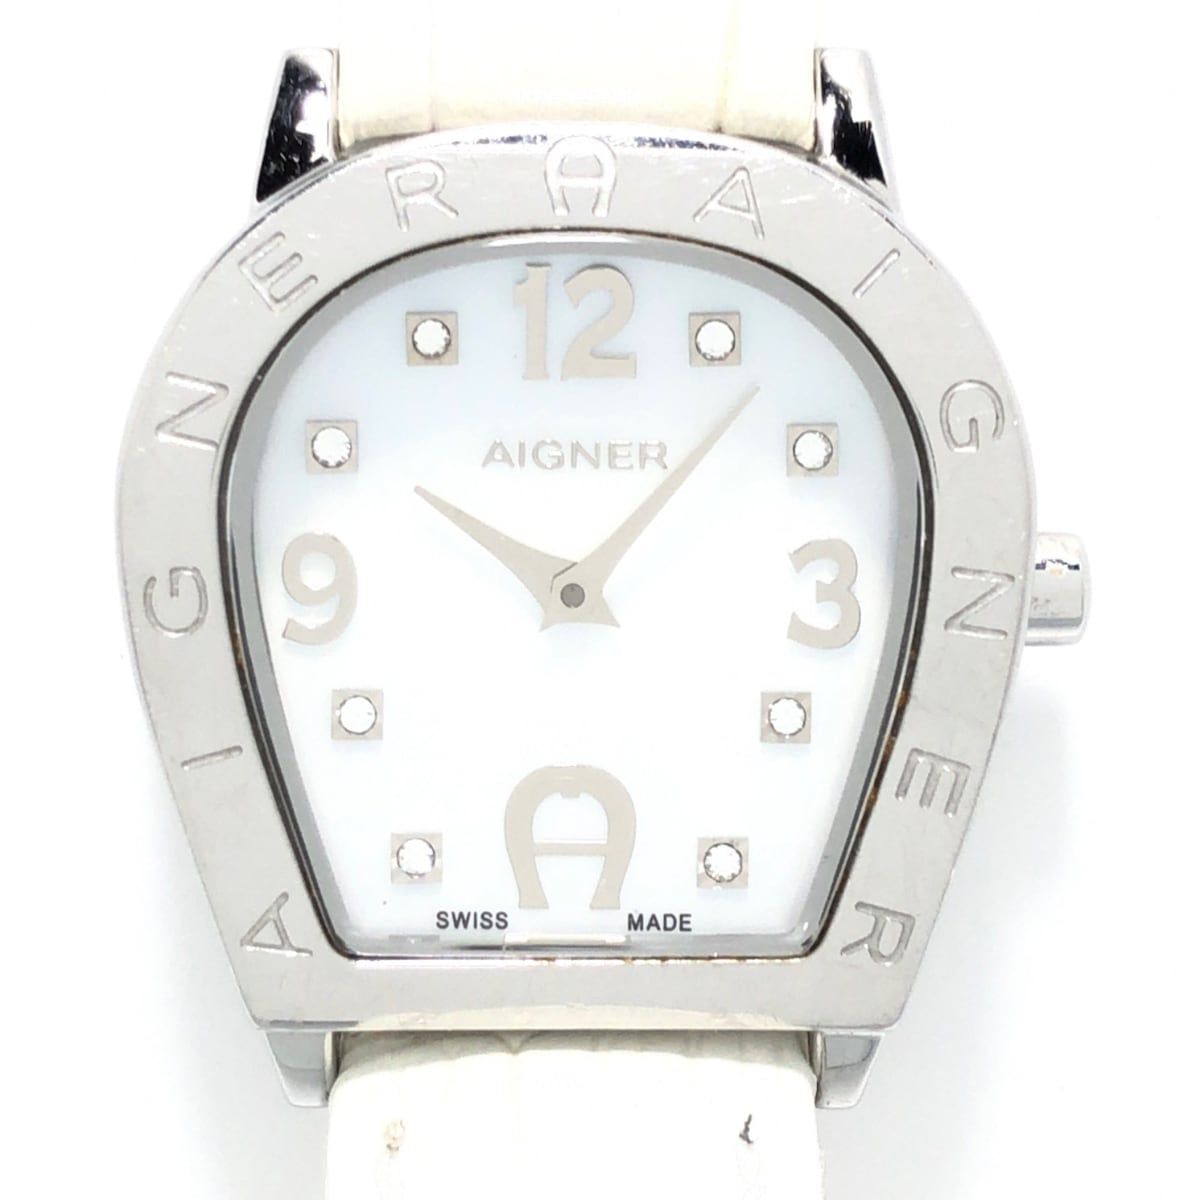 AIGNER(アイグナー) 腕時計 - A32200 レディース ラインストーン ホワイトシェル